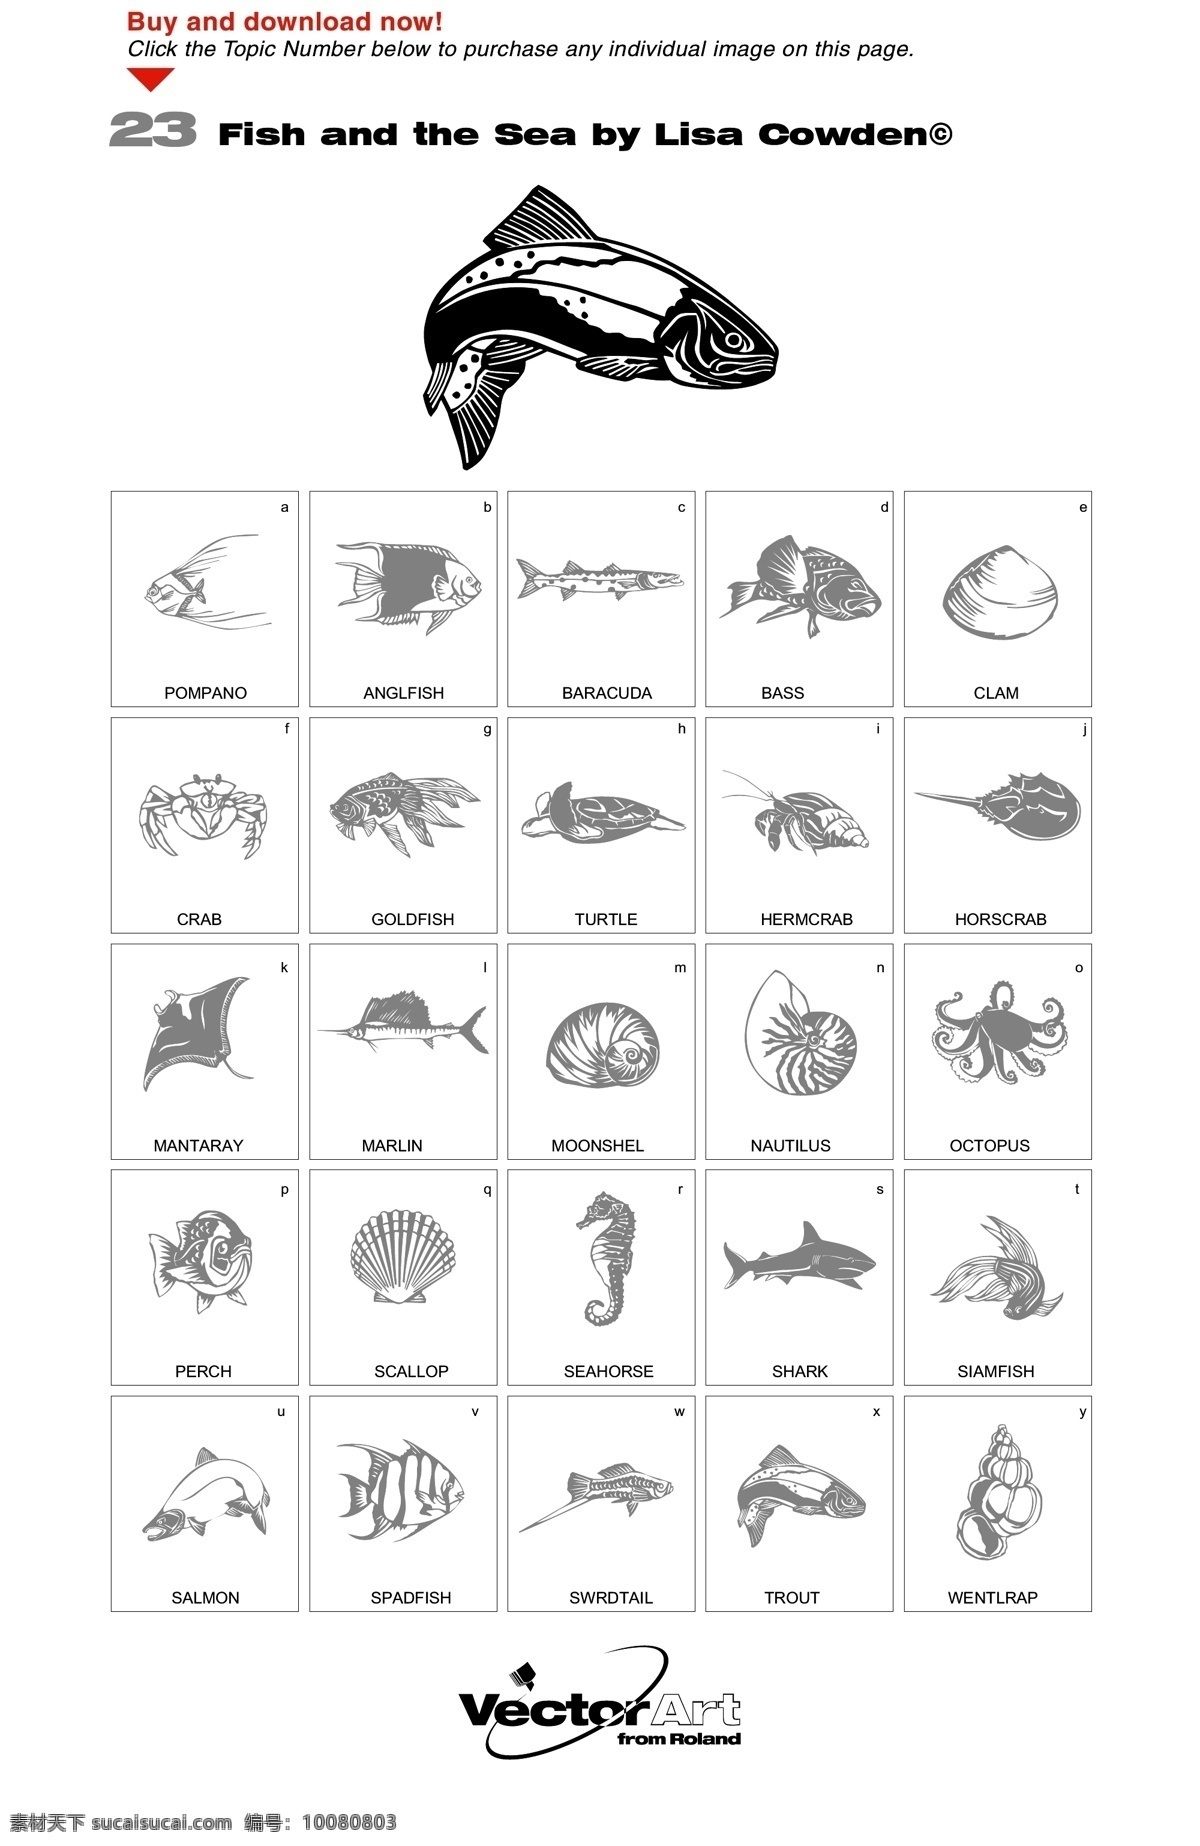 鱼类 海洋生物 矢量 贝壳 材料 海马 海洋 生活 蜗牛 蟹 鱼 黑色和白色 画线 矢量图 矢量人物